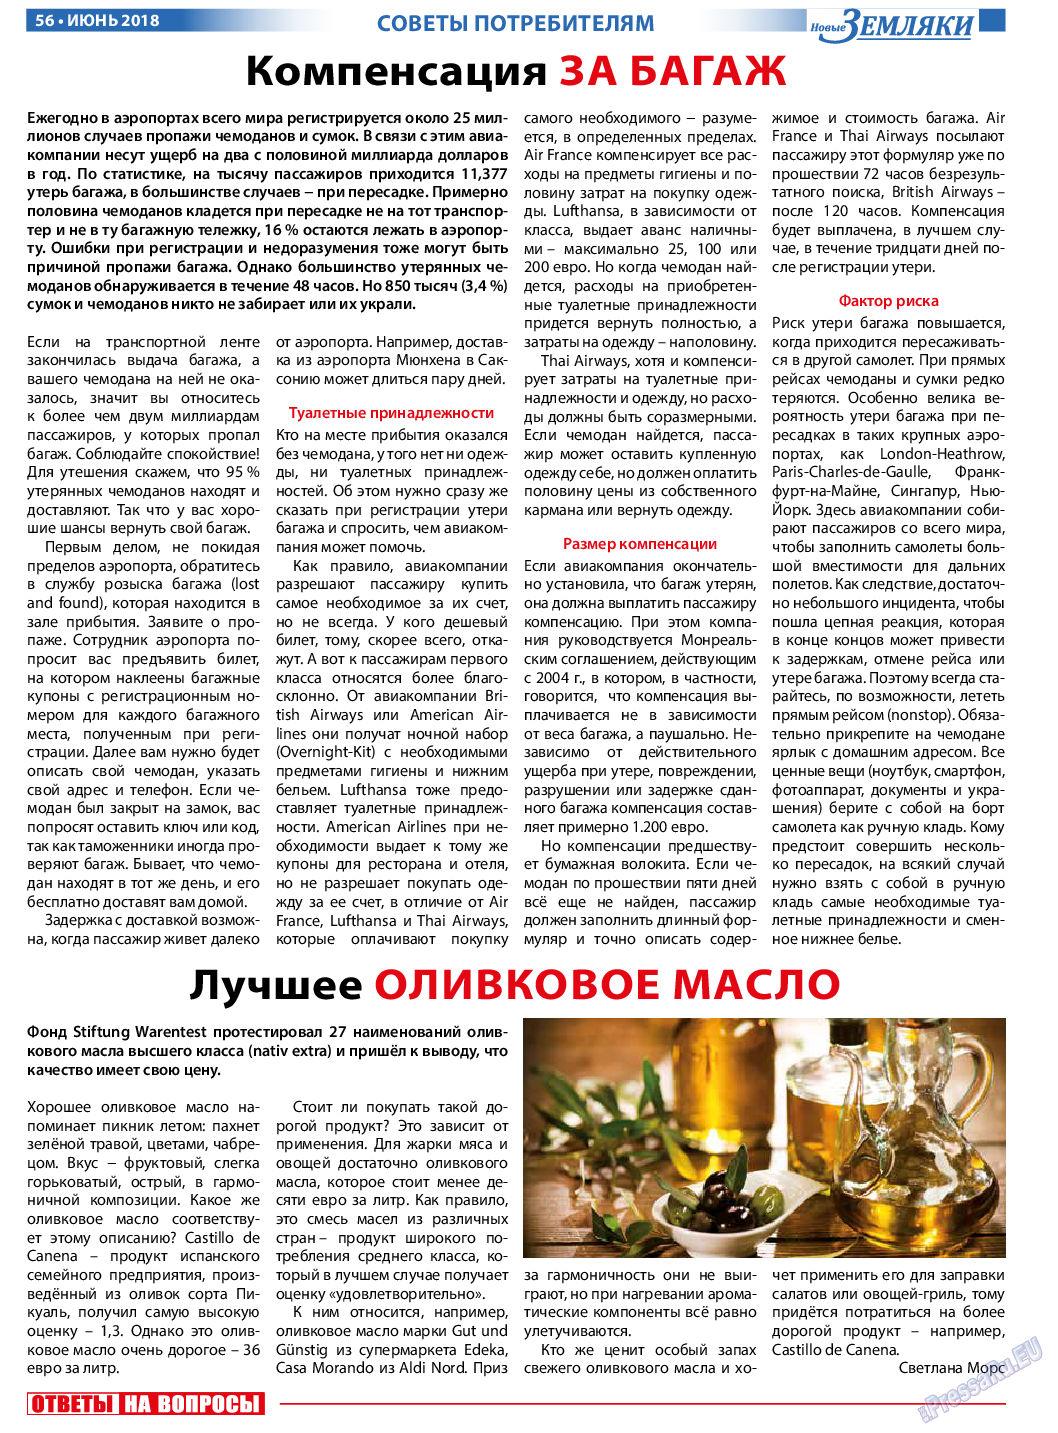 Новые Земляки, газета. 2018 №6 стр.56